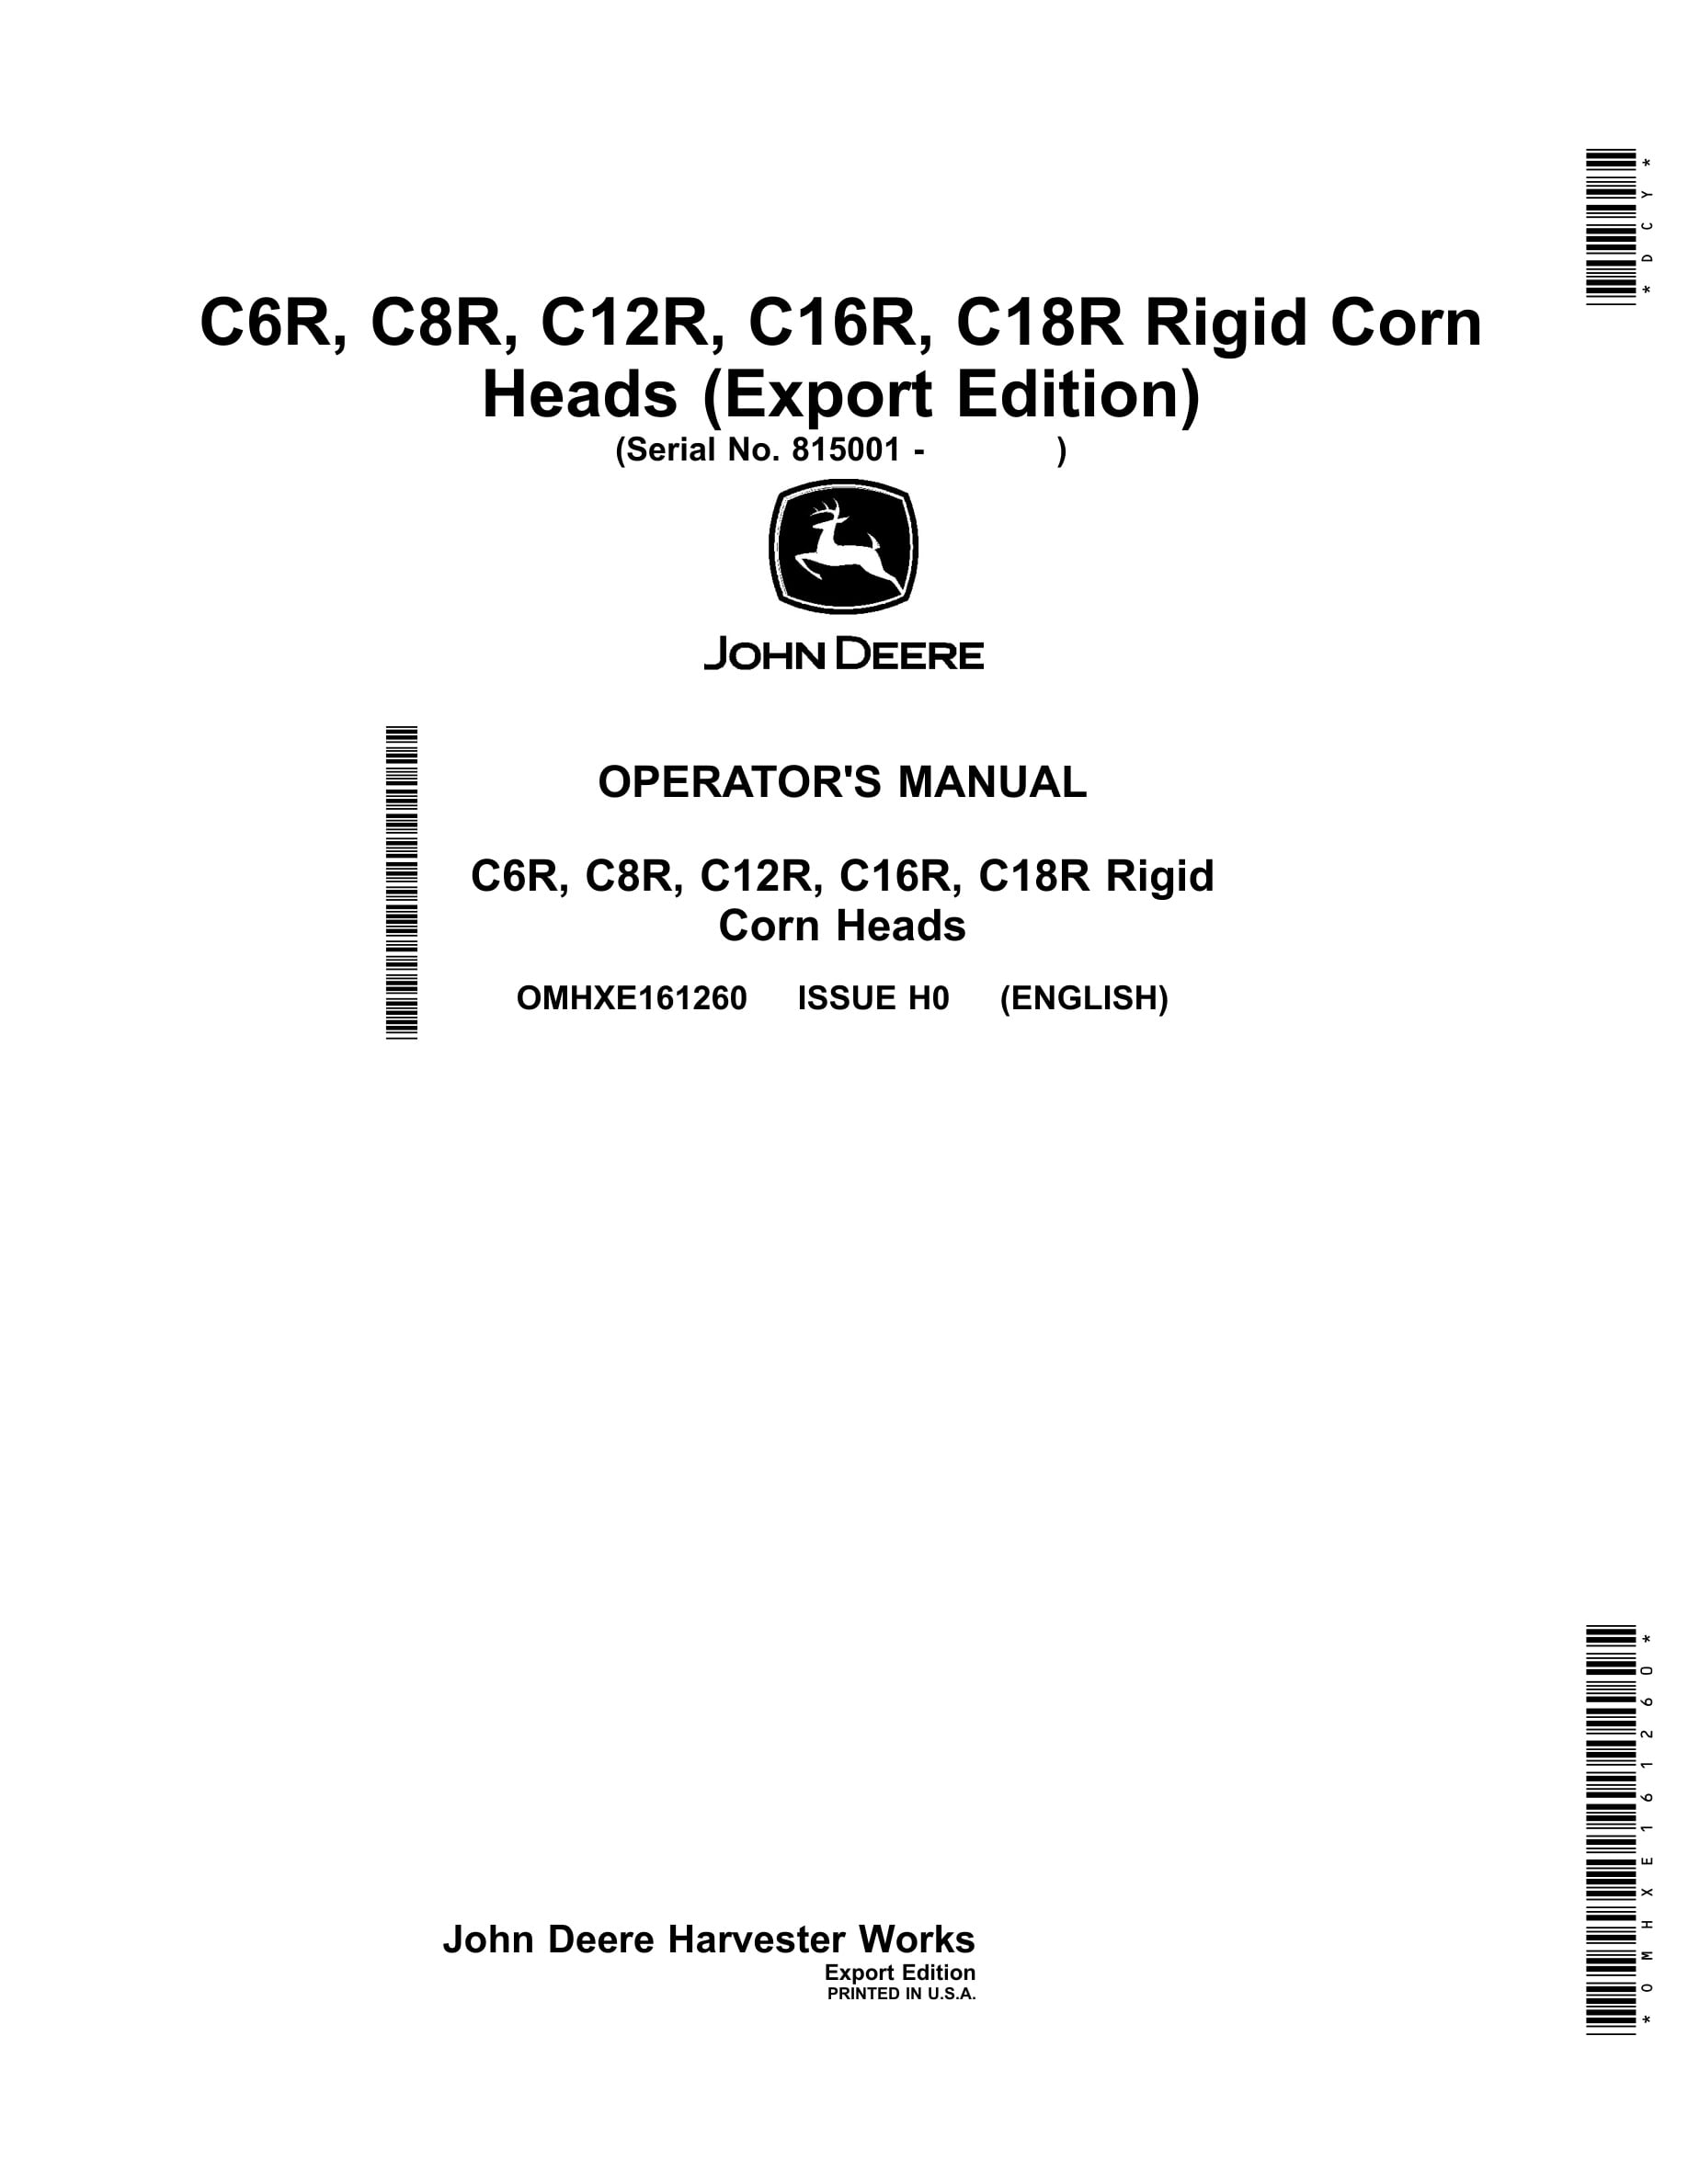 John Deere C6R, C8R, C12R, C16R, C18R Rigid Corn Heads Operator Manual OMHXE161260-1